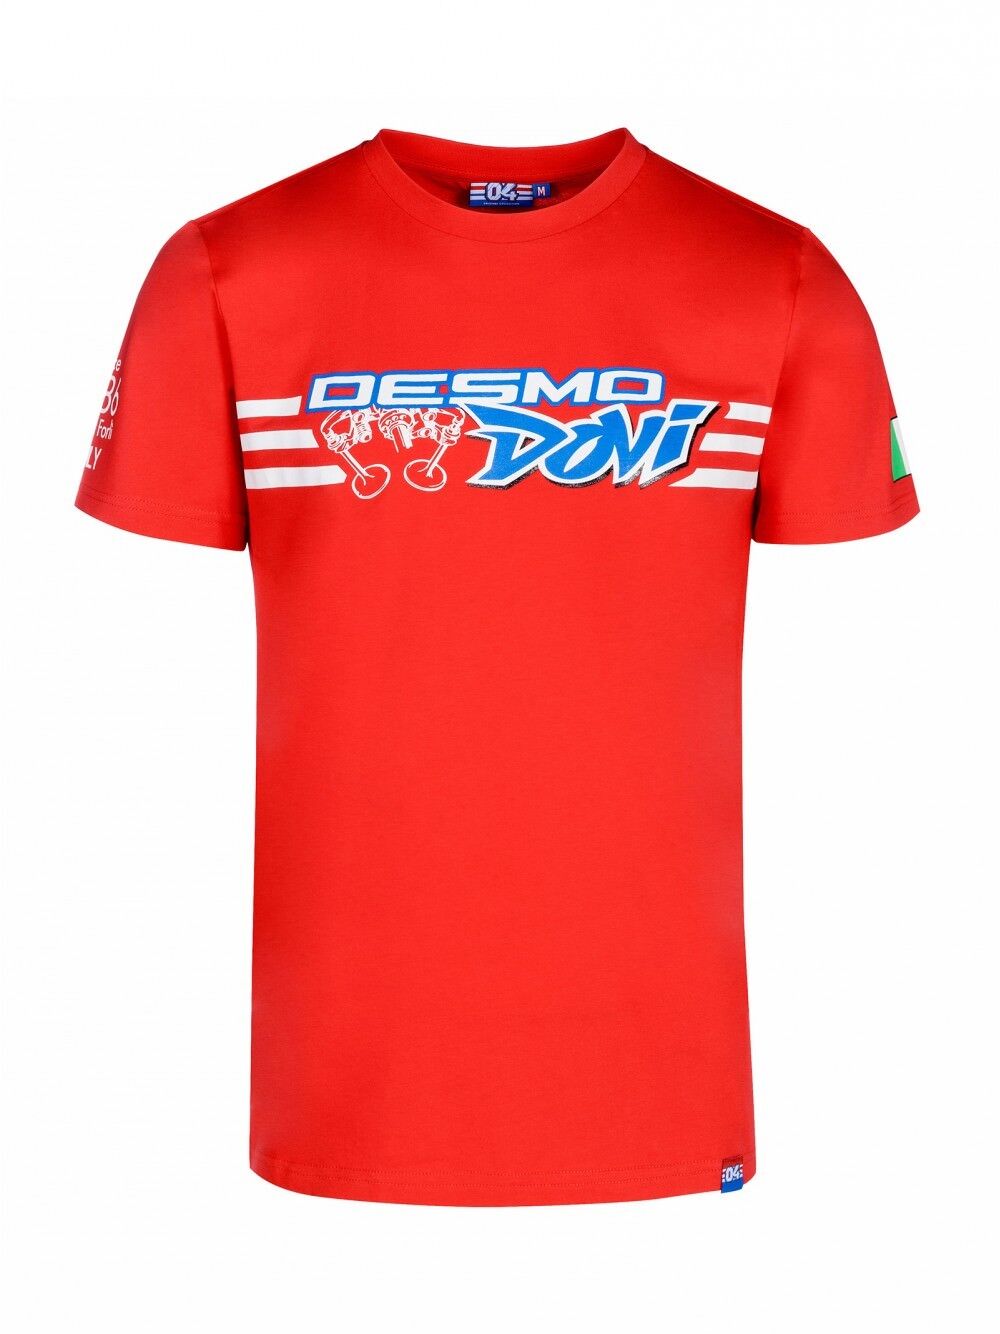 Andrea Dovizioso Official "Desmo Dovi" T'Shirt - 18 32203